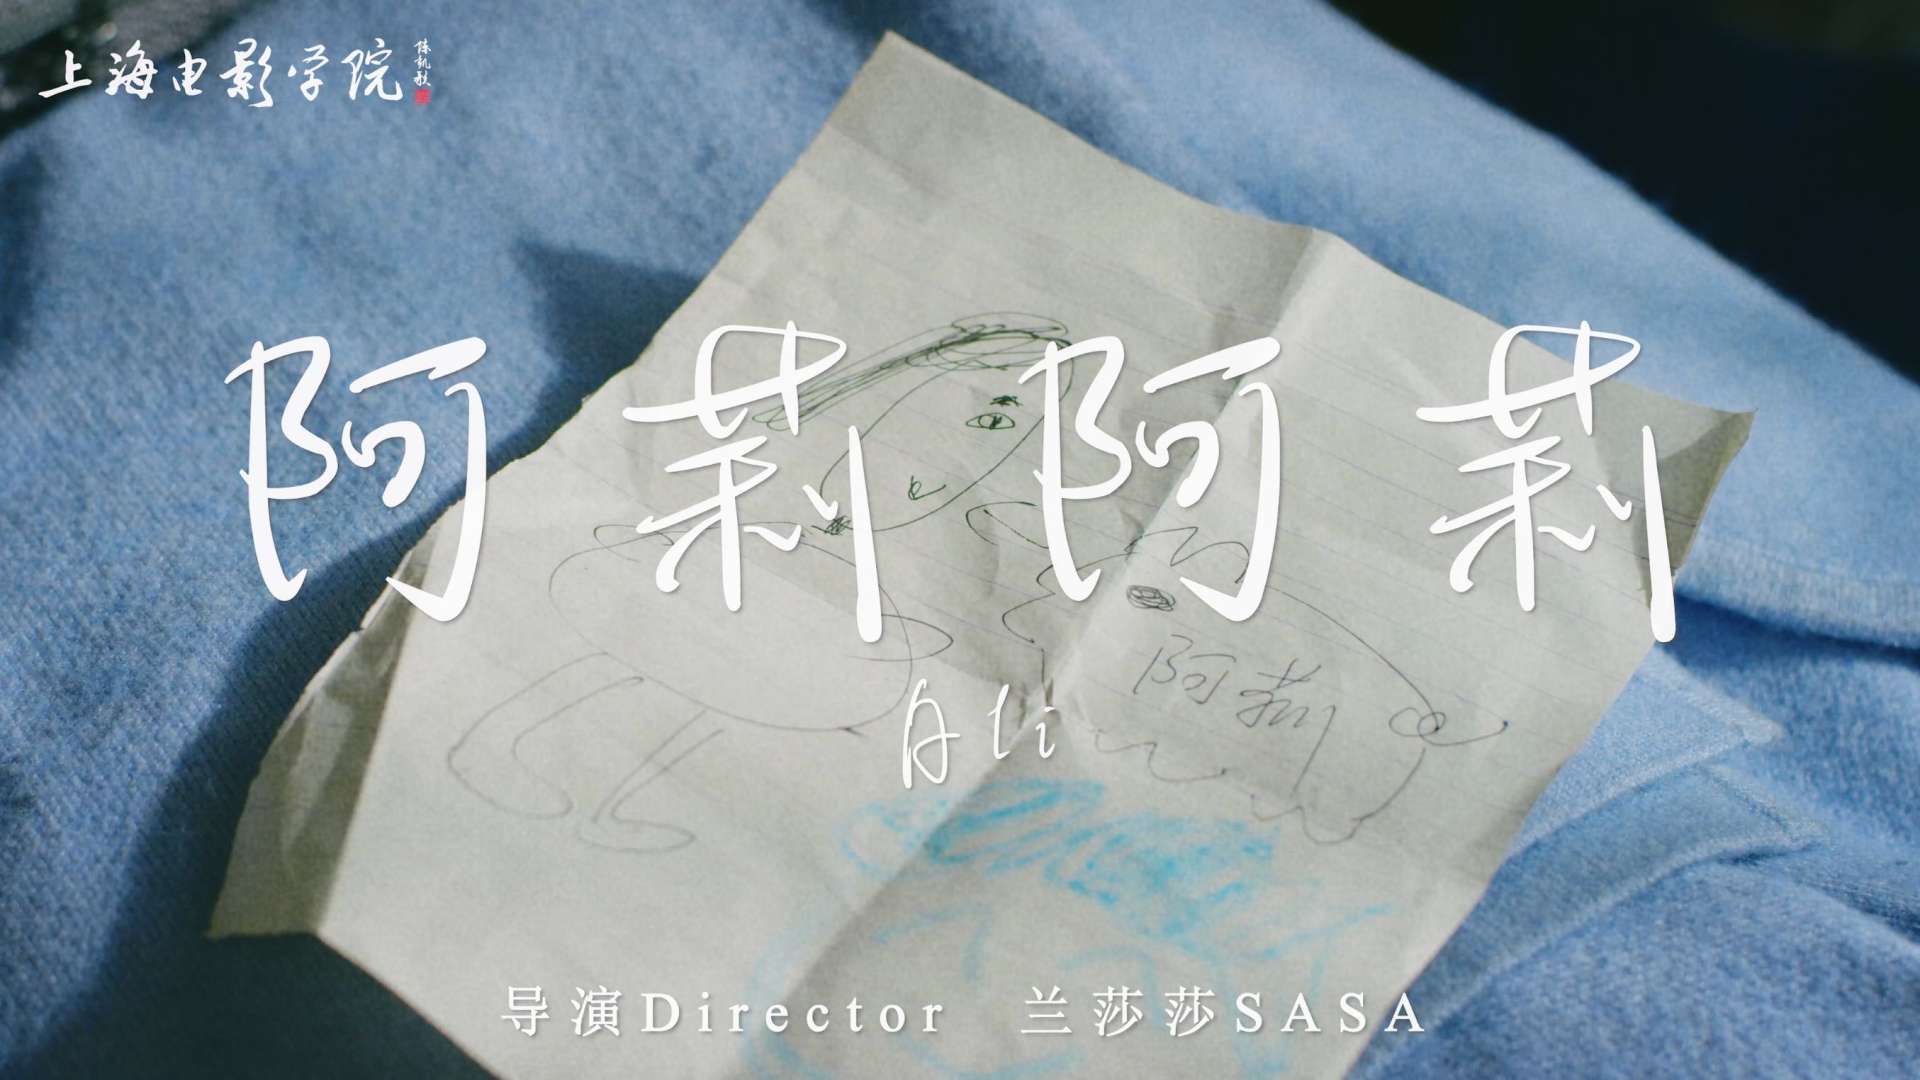 文艺爱情预告片｜ 上海电影学院毕业作品《阿莉阿莉》